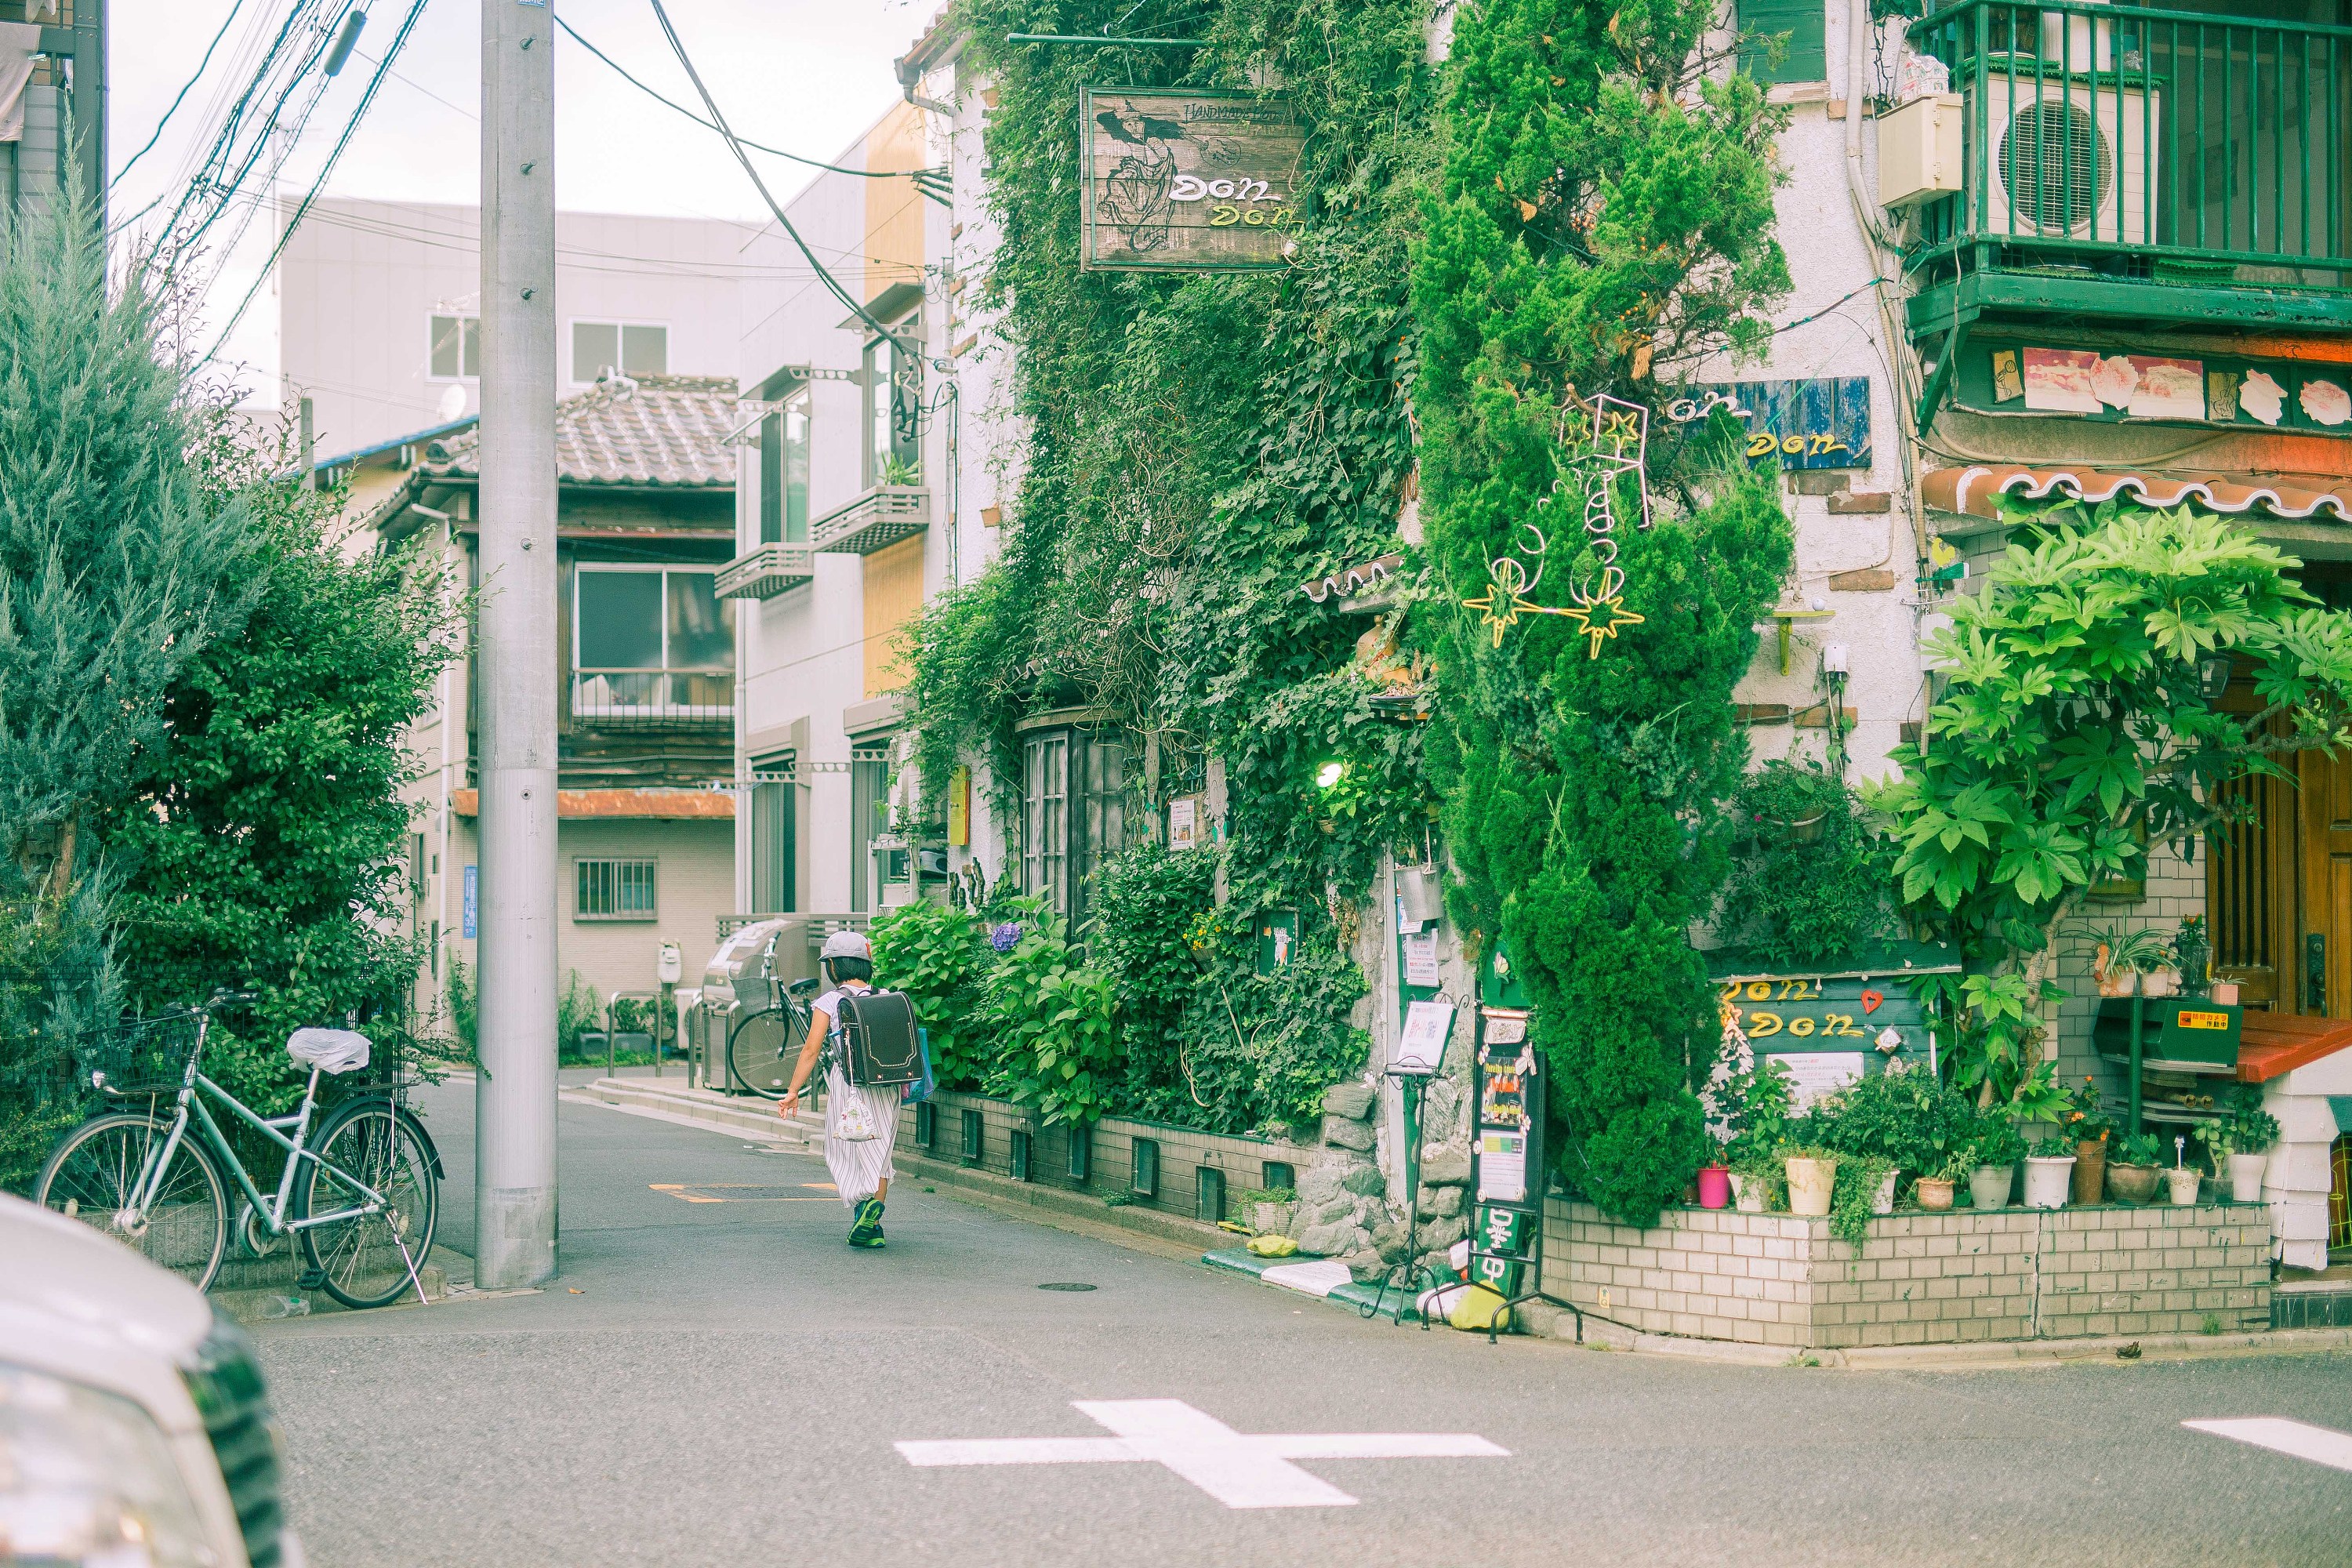 日本街道风景图片高清图片